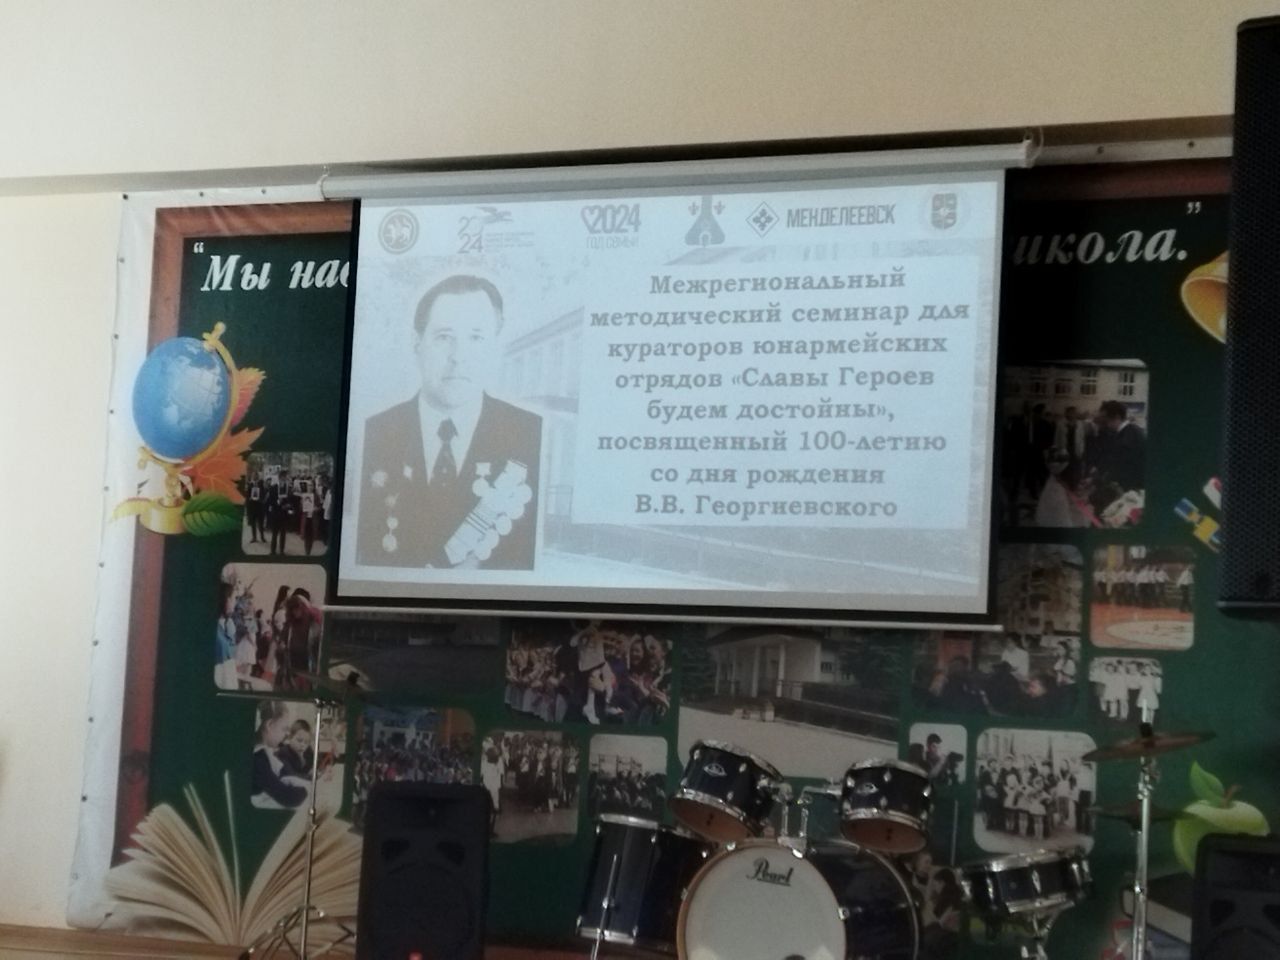 На базе школы №1 Менделеевска проведён Межрегиональный методический семинар «Славы Героев будем достойны!»